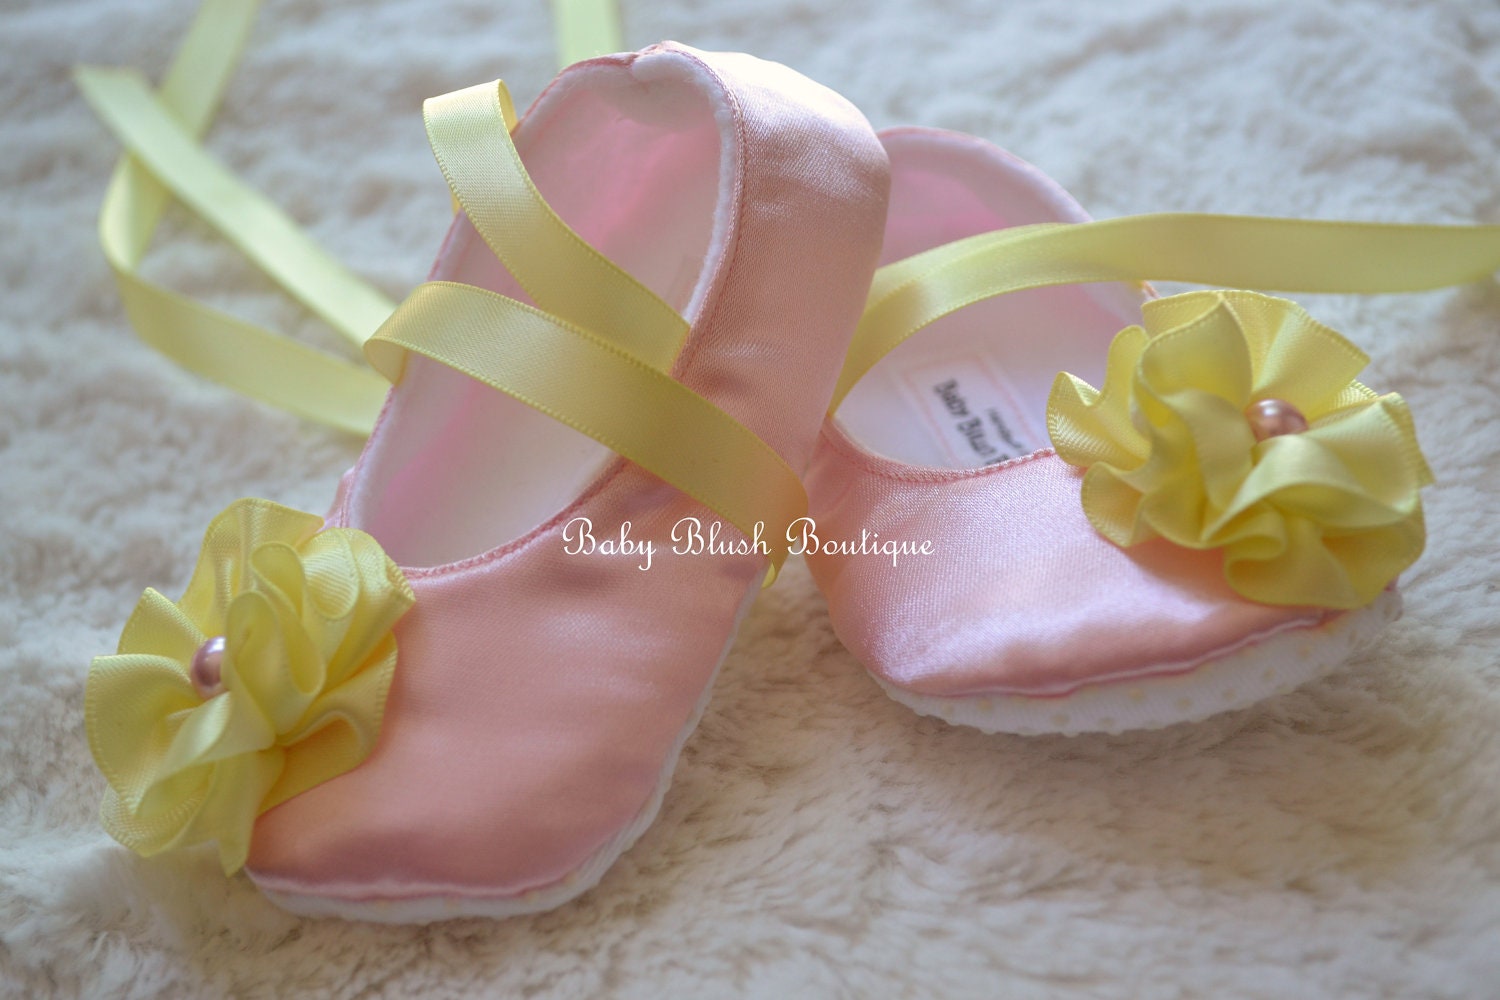 Baby Pink Satin Schuhe Soft Ballerina Slipper Mit Mais Ribbon Bindungen & Flower - Lemonade von babyblushboutique